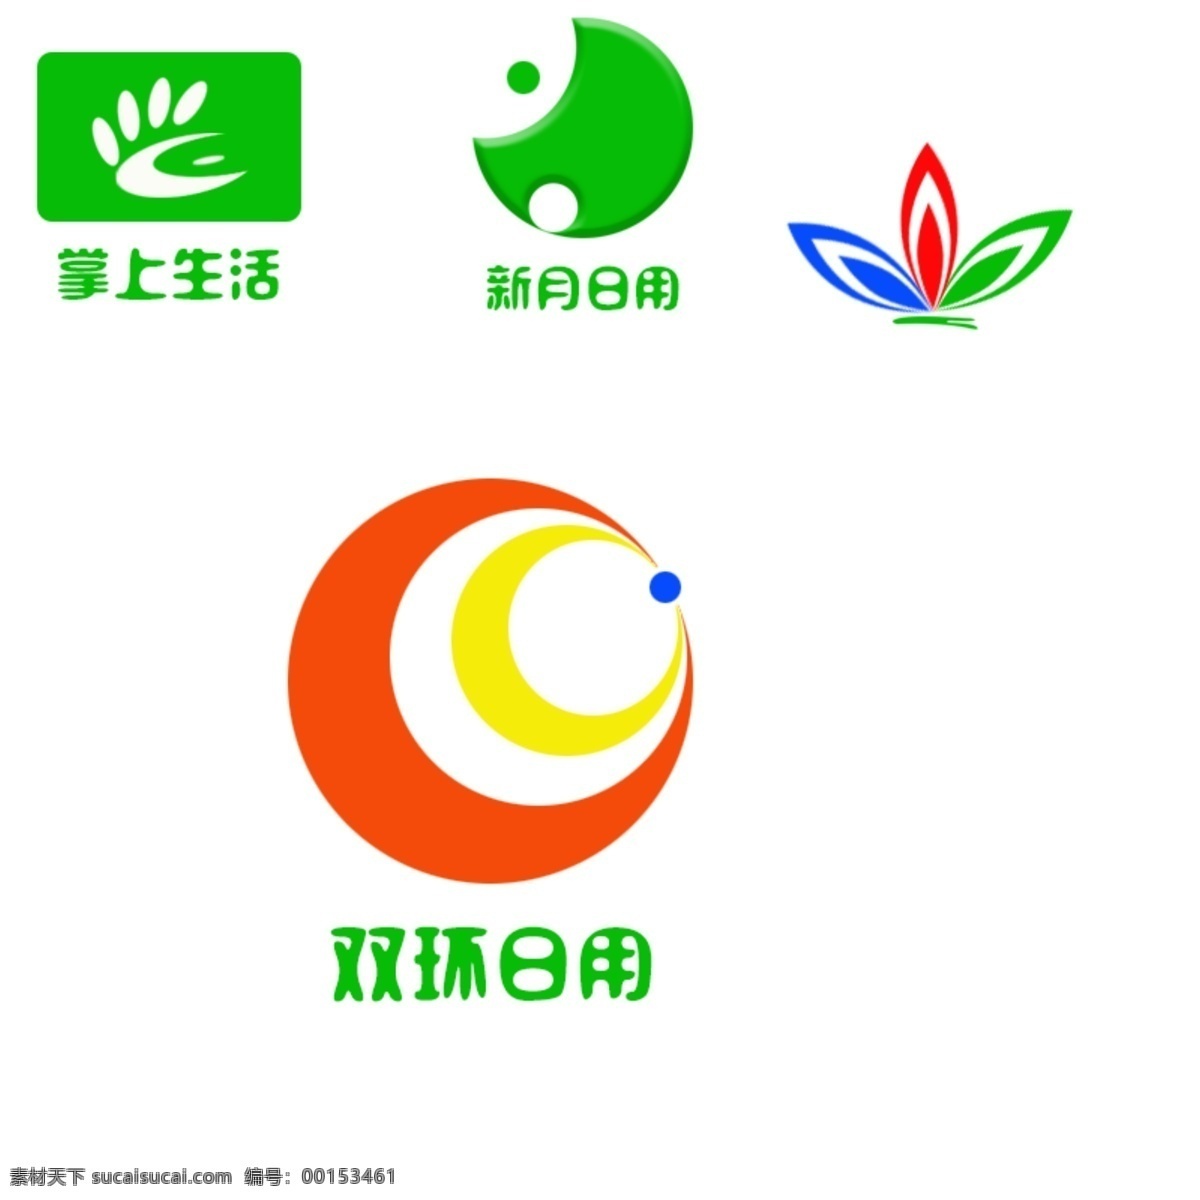 圆形 logo 思路 logo设计 简约 白色